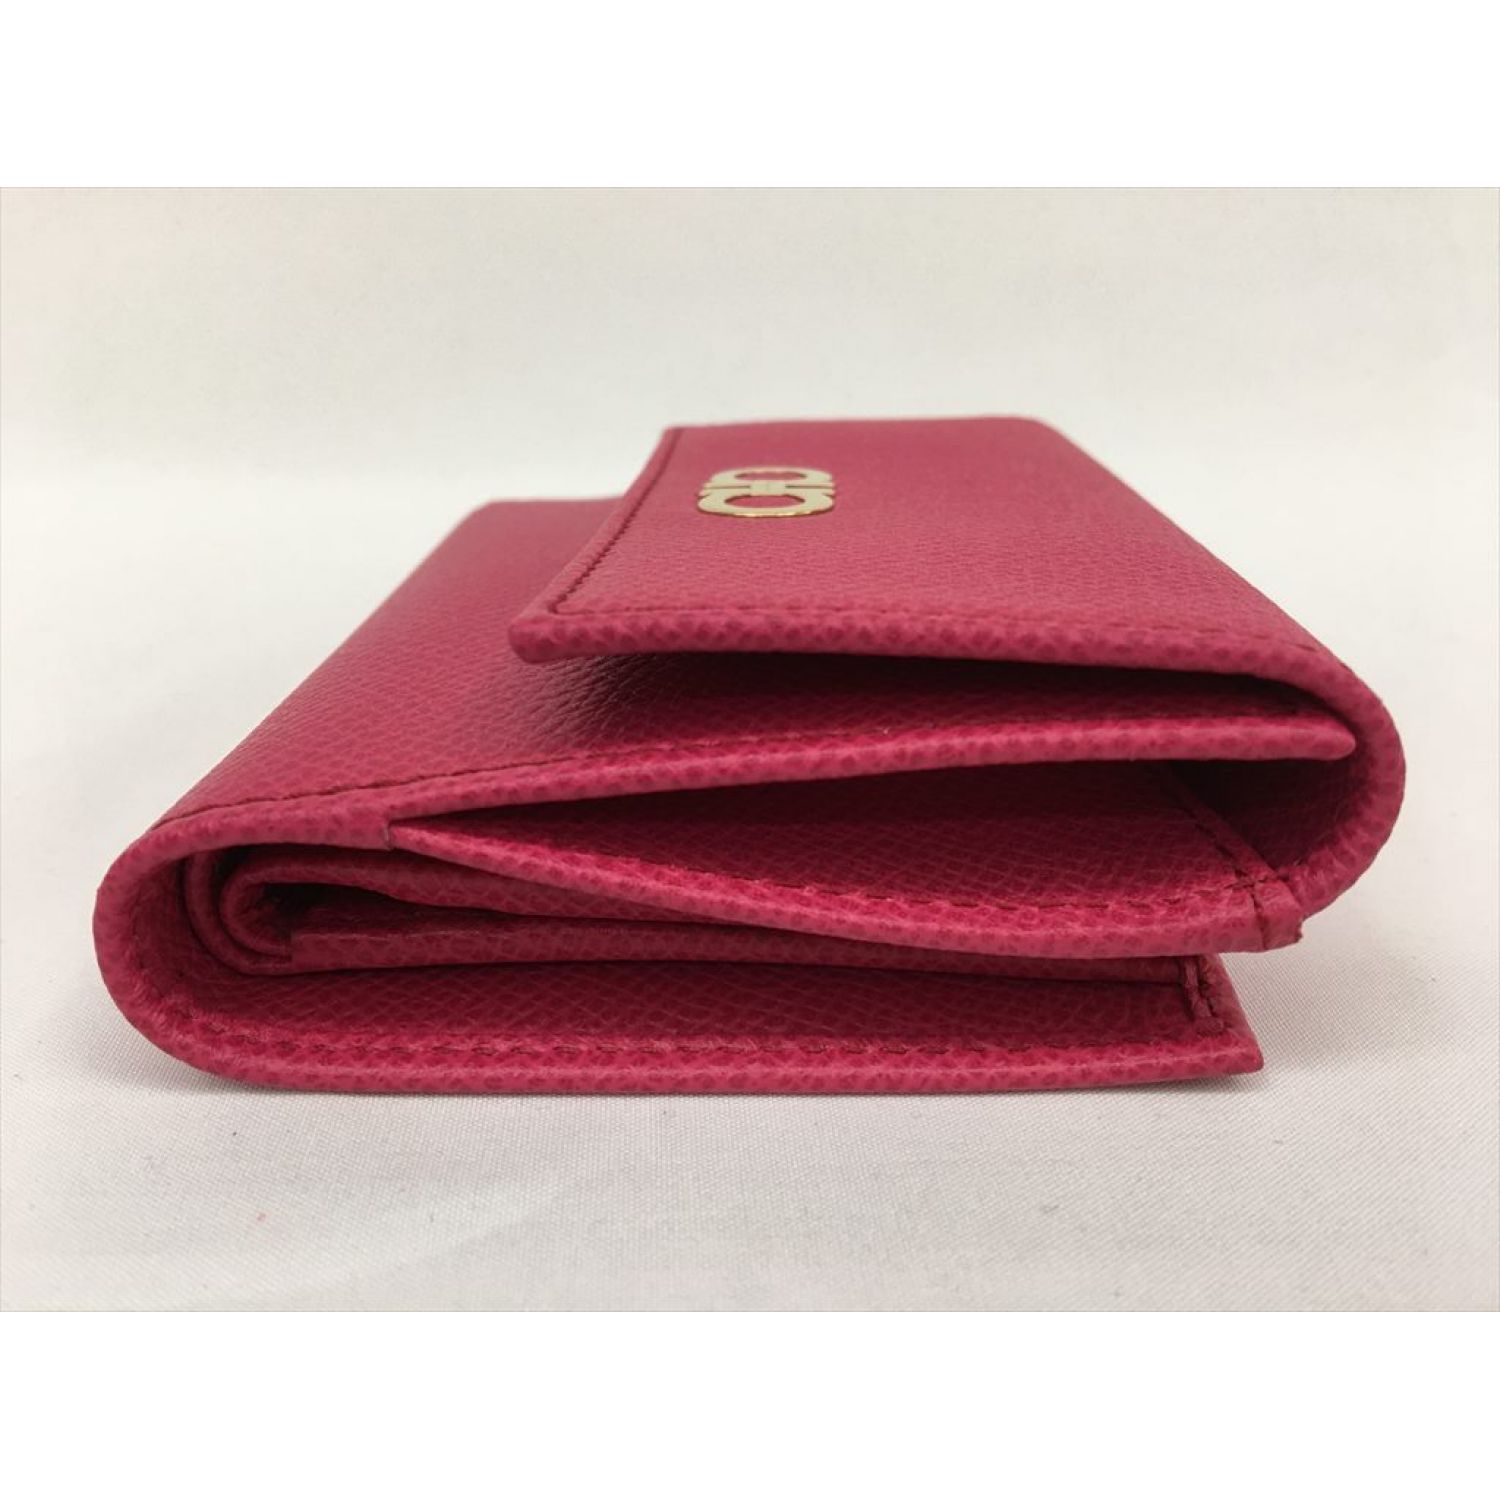 【美品】Ferragamo フェラガモ 二つ折財布 ラウンドファスナー ピンク